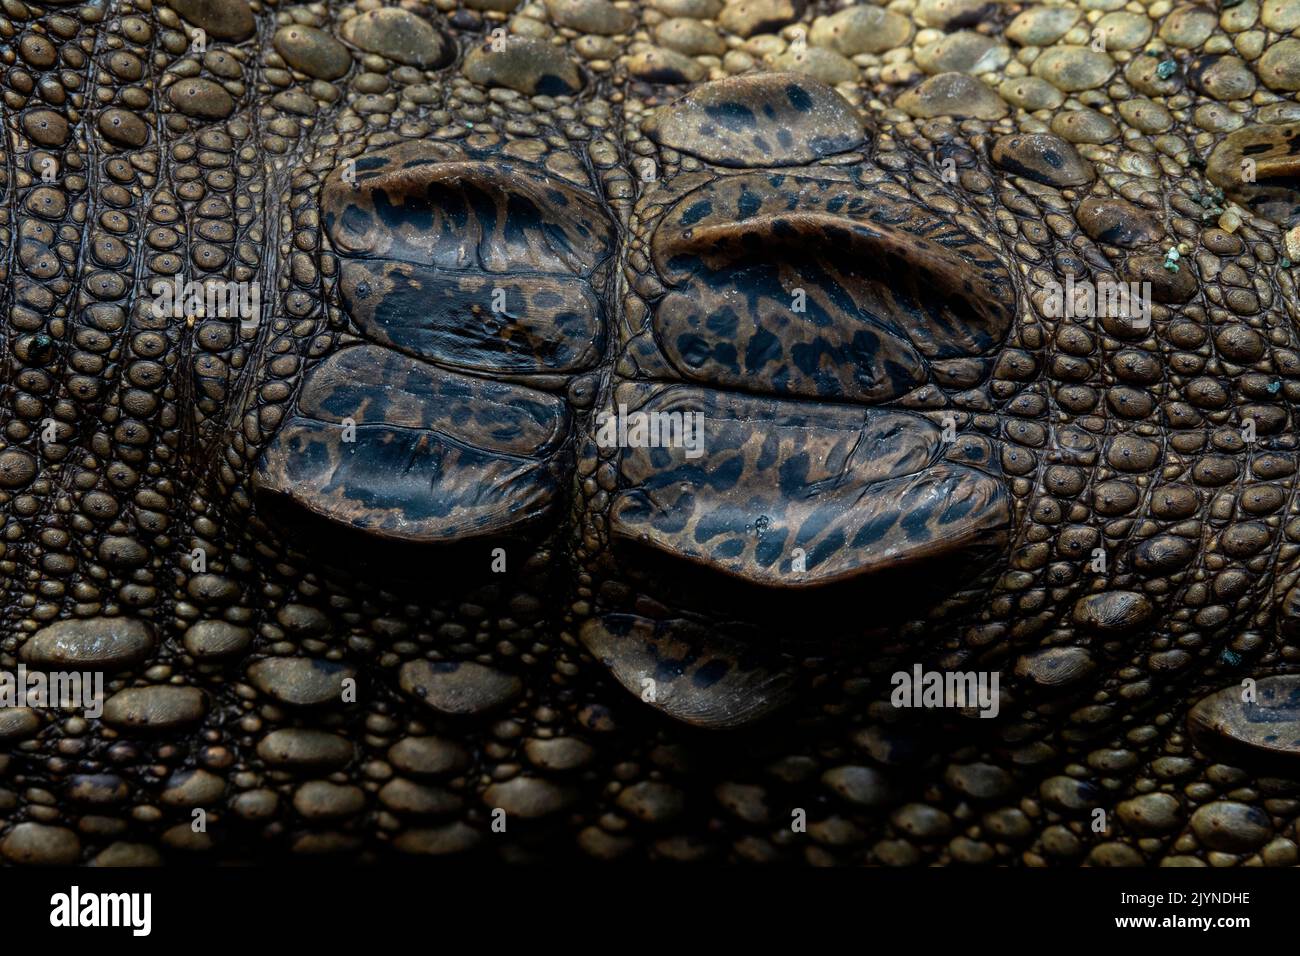 Détail de l'alligator d'amérique centrale (Crocodylus acutus) des balances de toit crâniennes, Karate, Osa, Costa Rica Banque D'Images